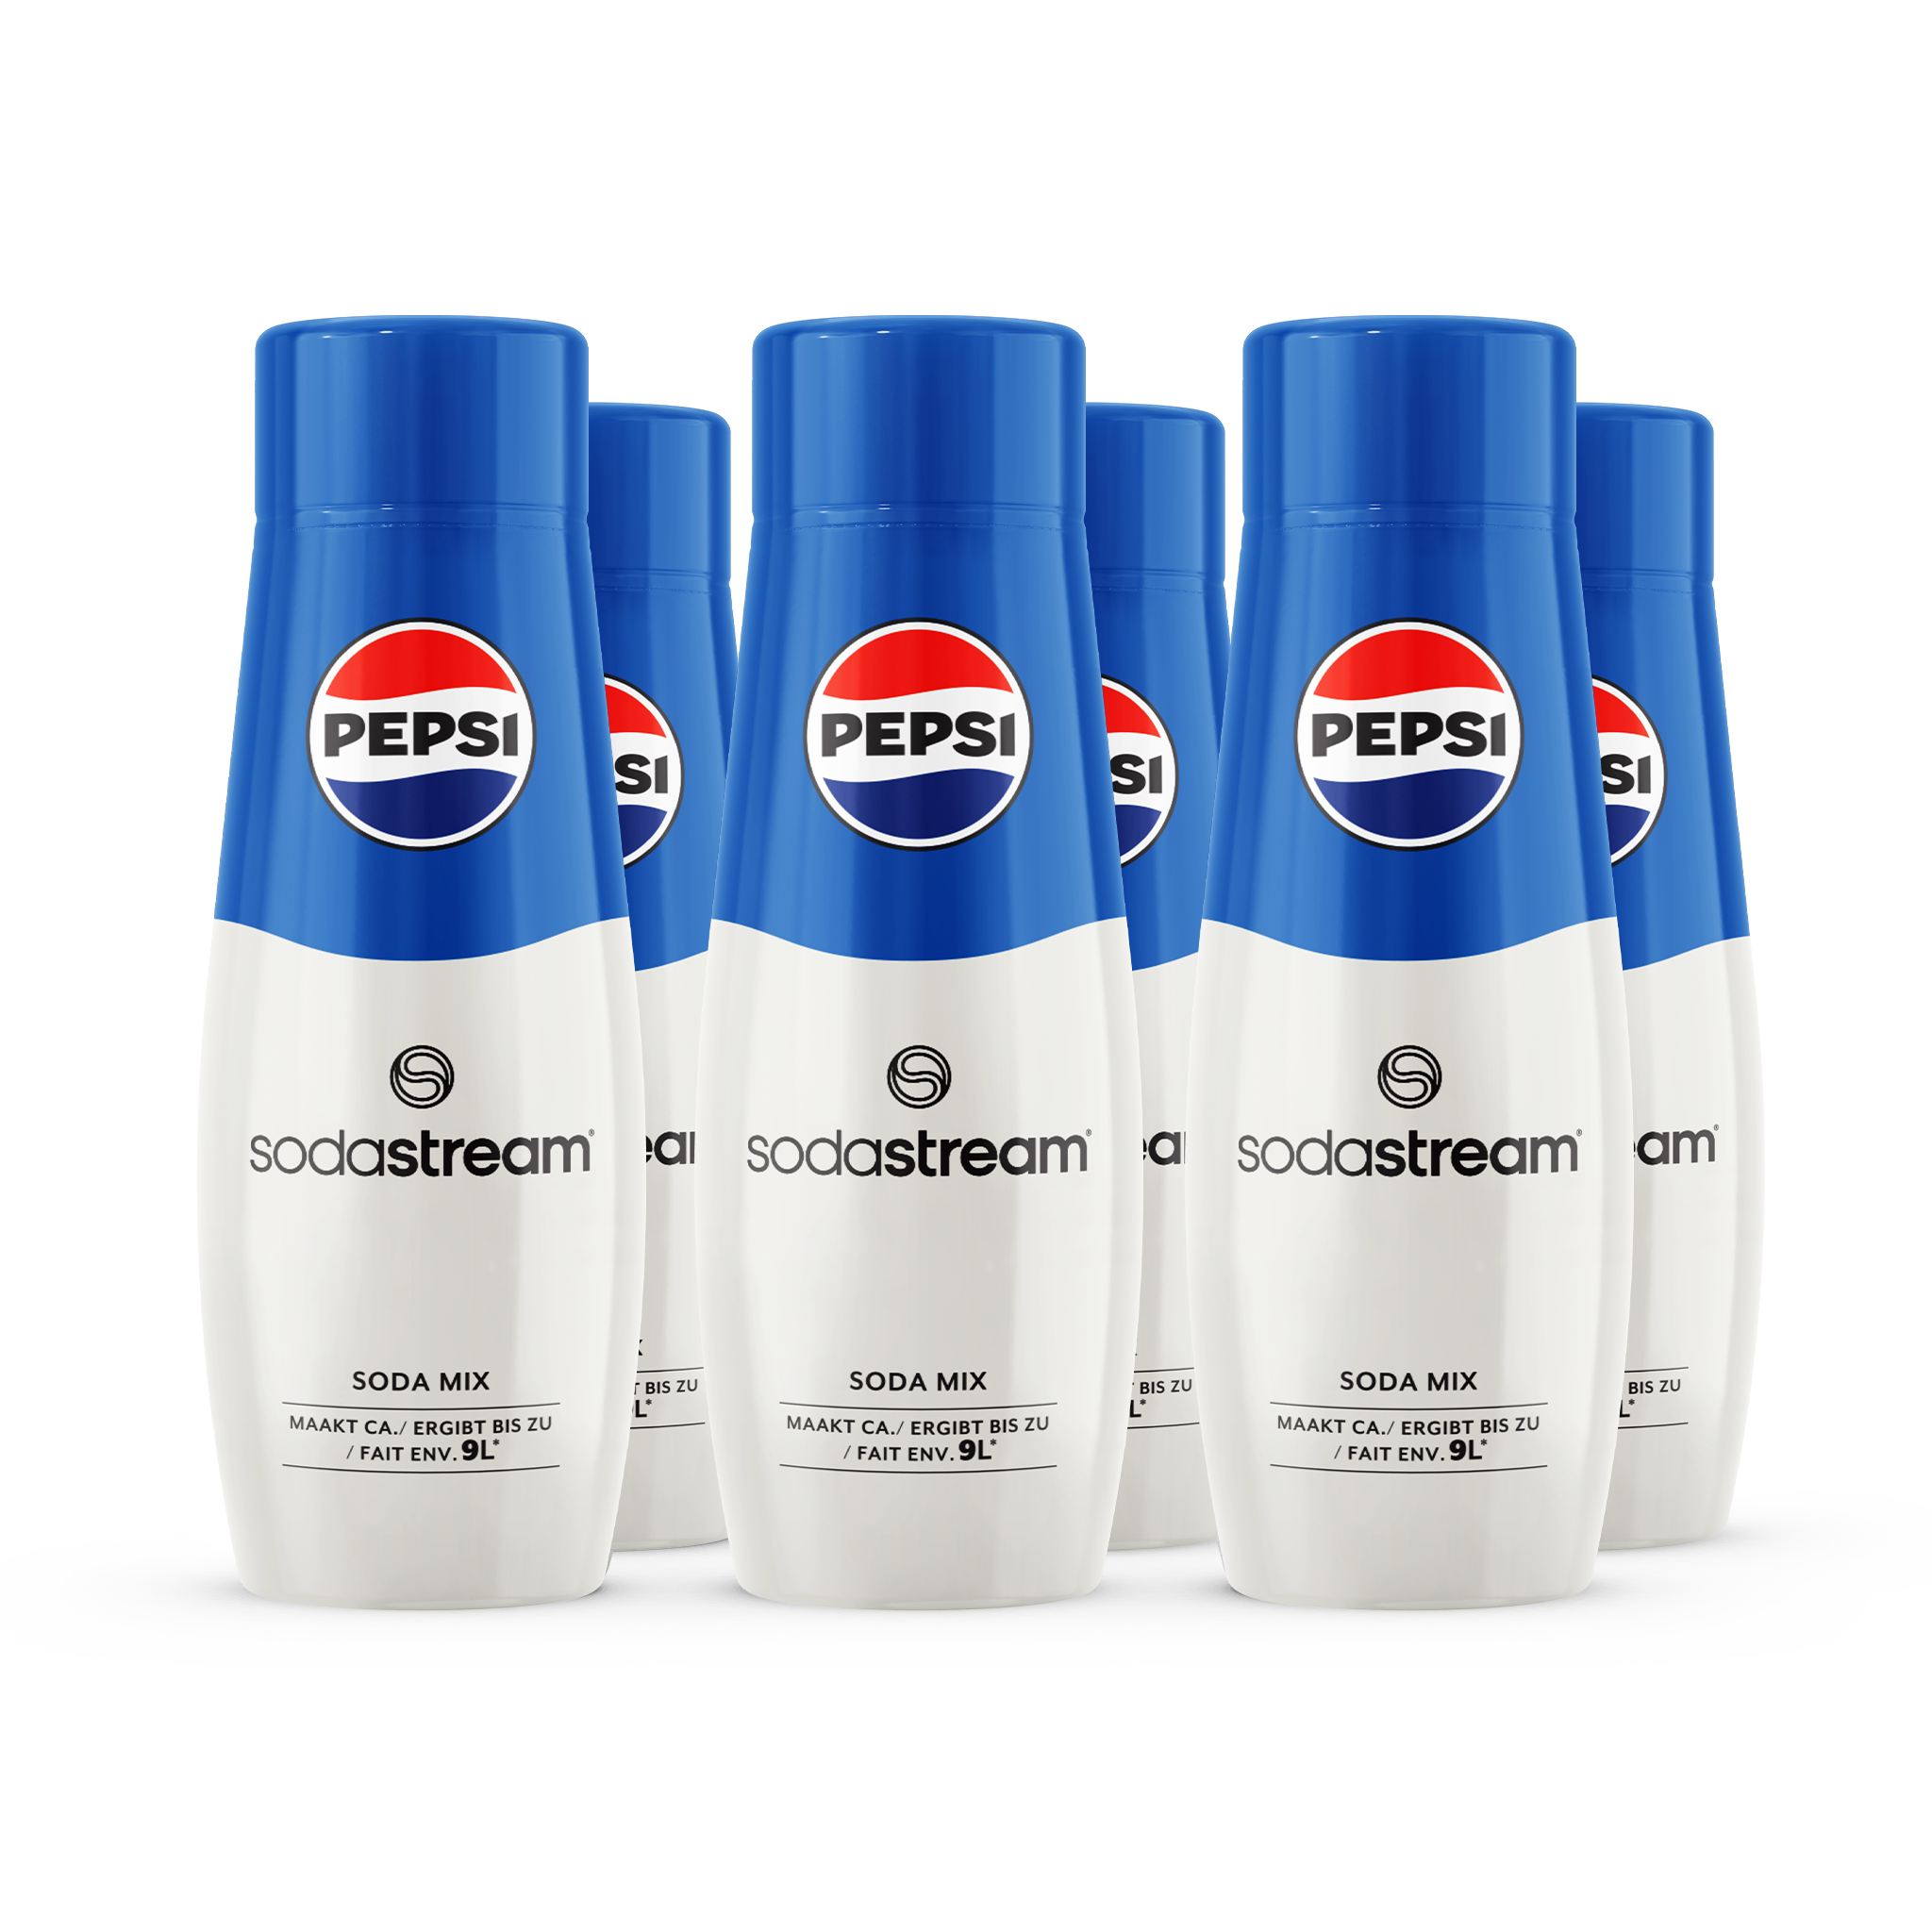 SodaStream Pepsi 6-pack